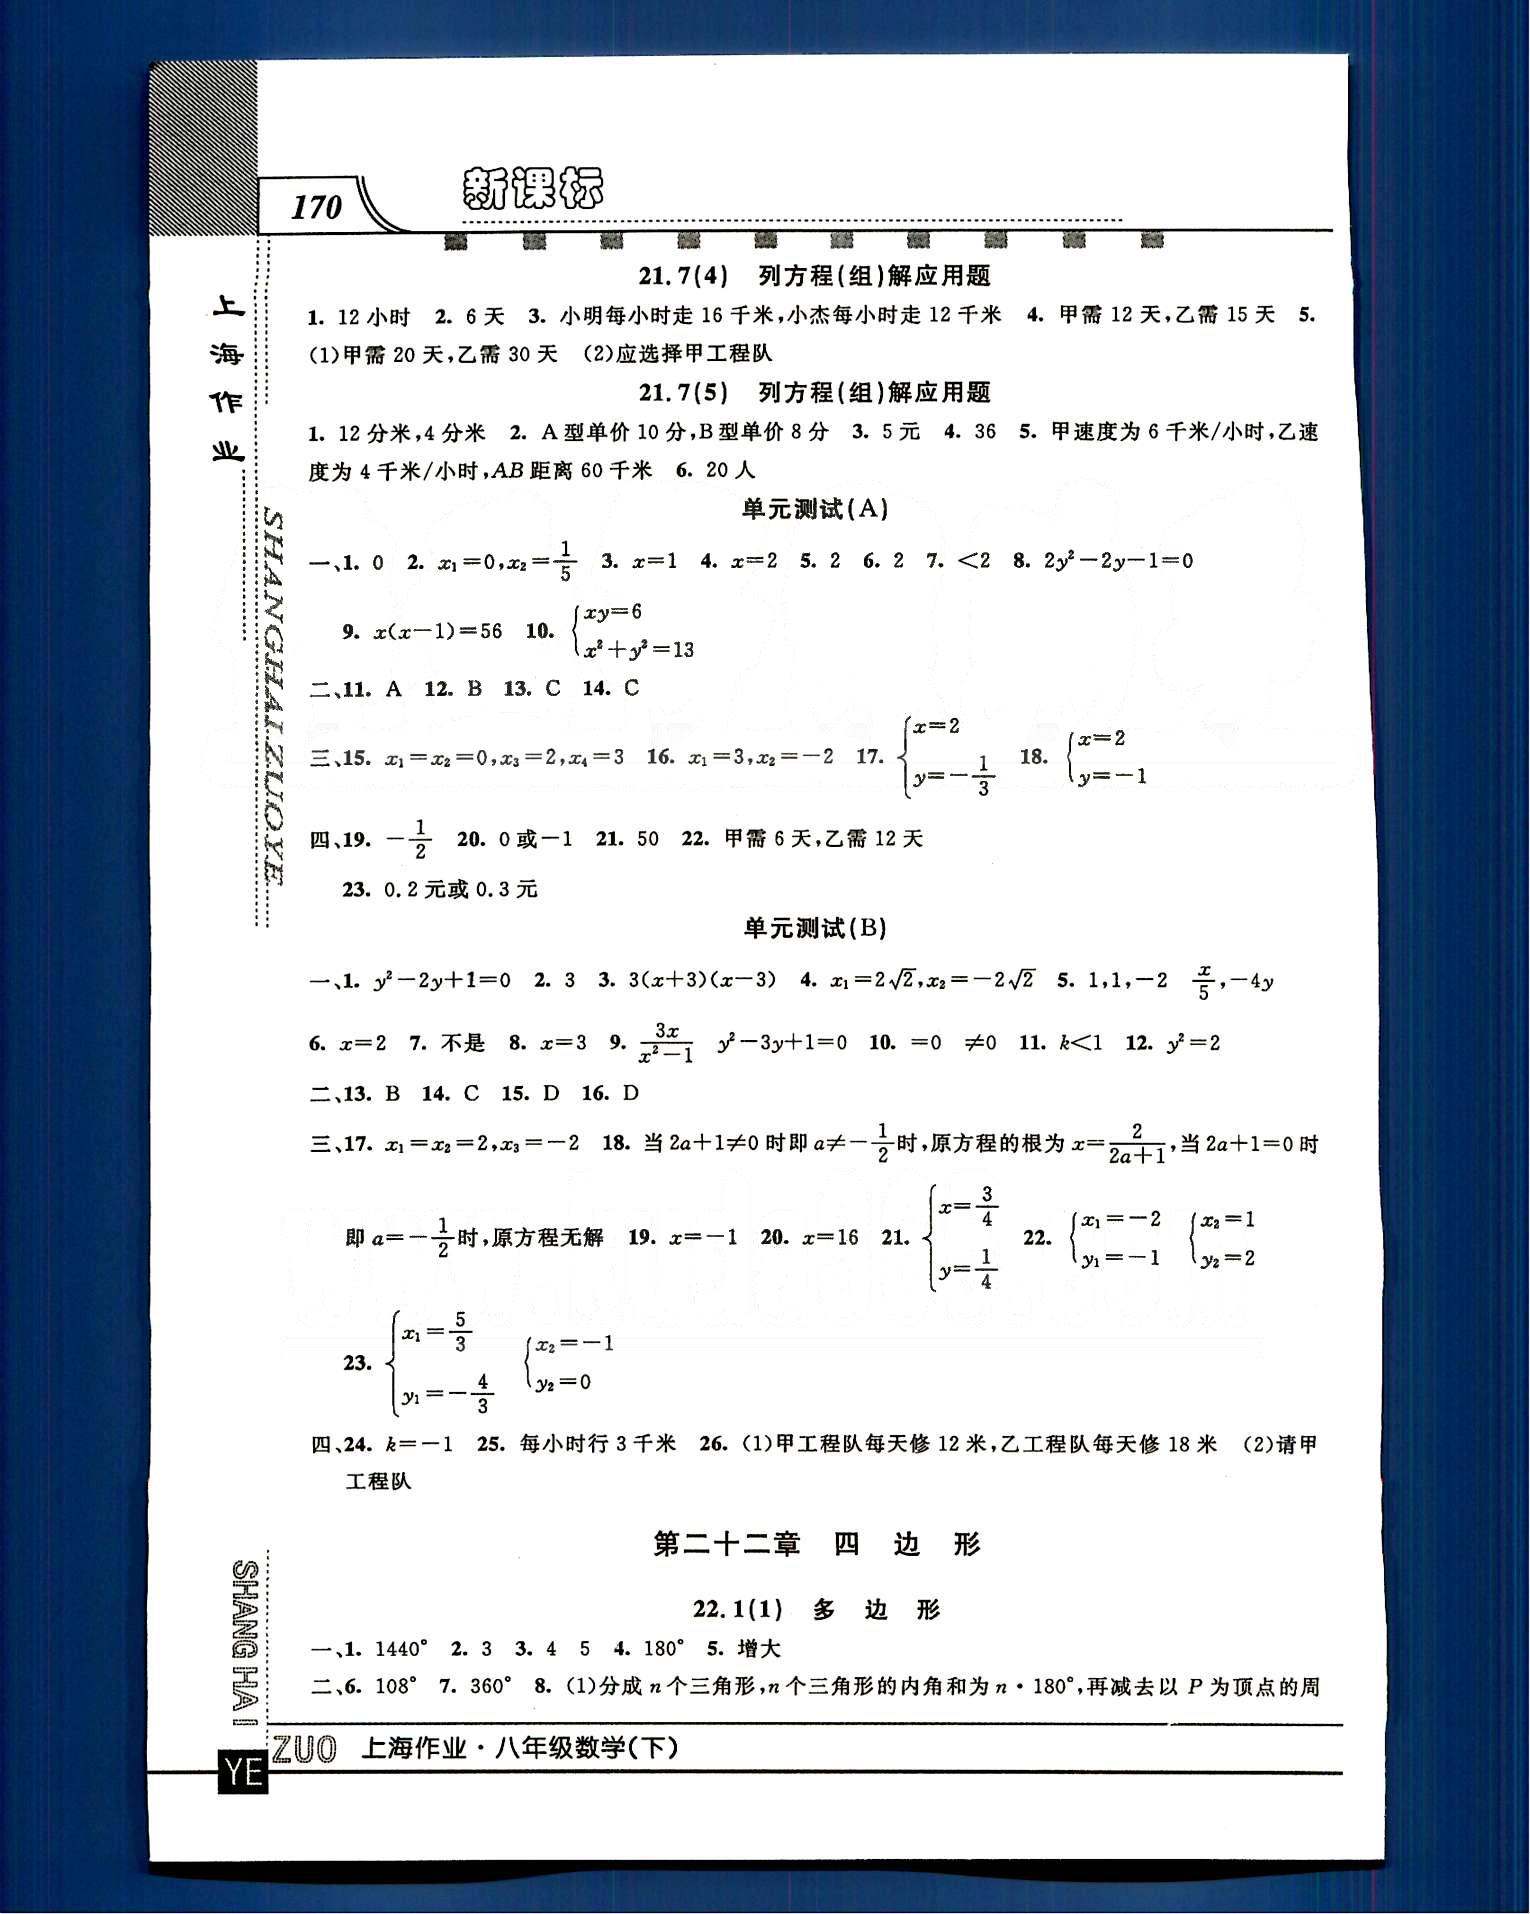 20145 钟书金牌 上海作业八年级下数学上海大学出版社 第二十章-第二十三章 [6]